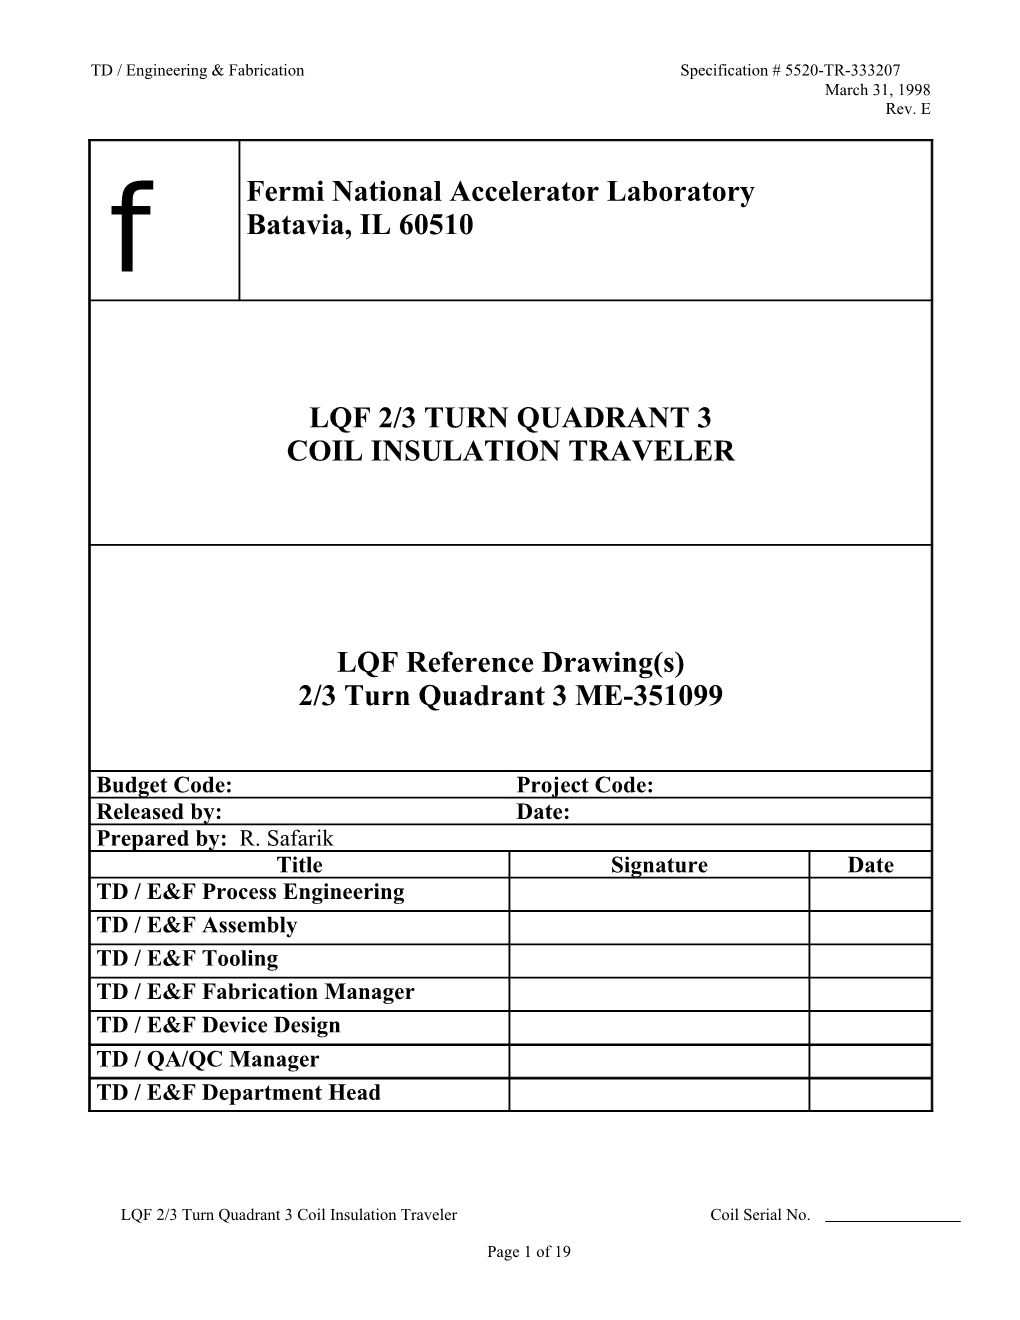 LQF 2/3 Turn Q3 Coil Insul